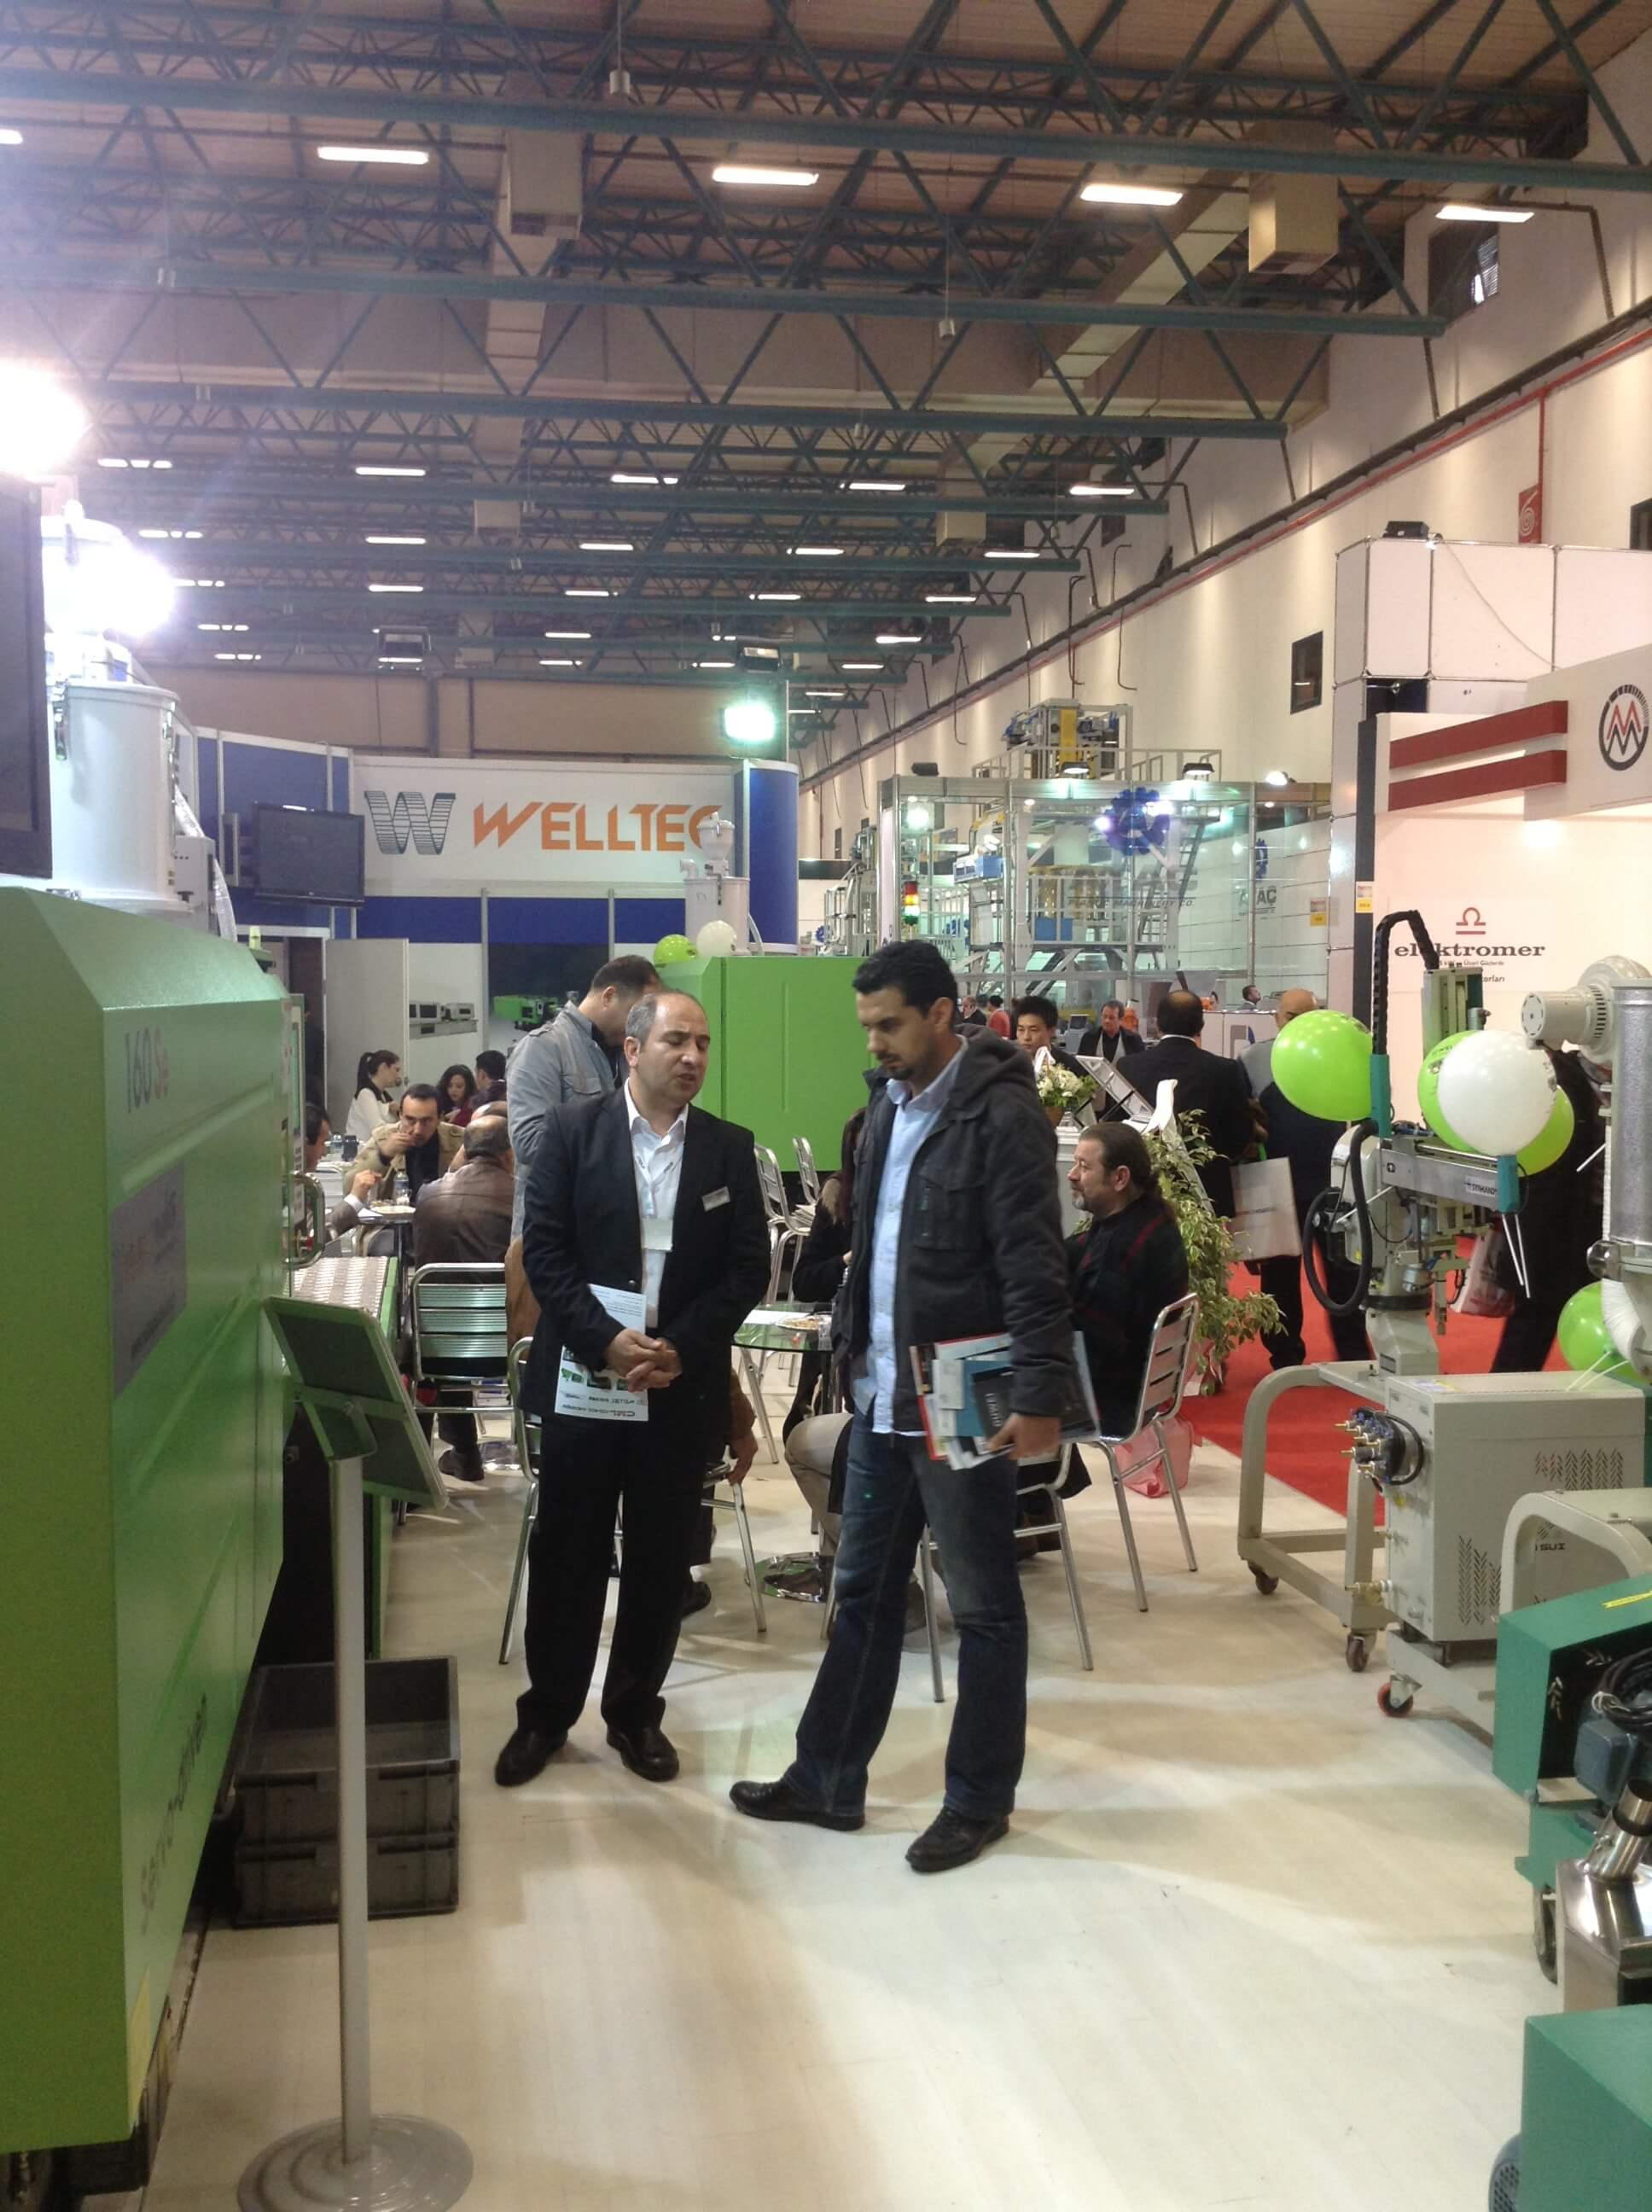 Plast Eurasia 2013 Fuarında Nokta Plastik Teknolojileri Welltec Plastik Enjeksiyon Makineleri